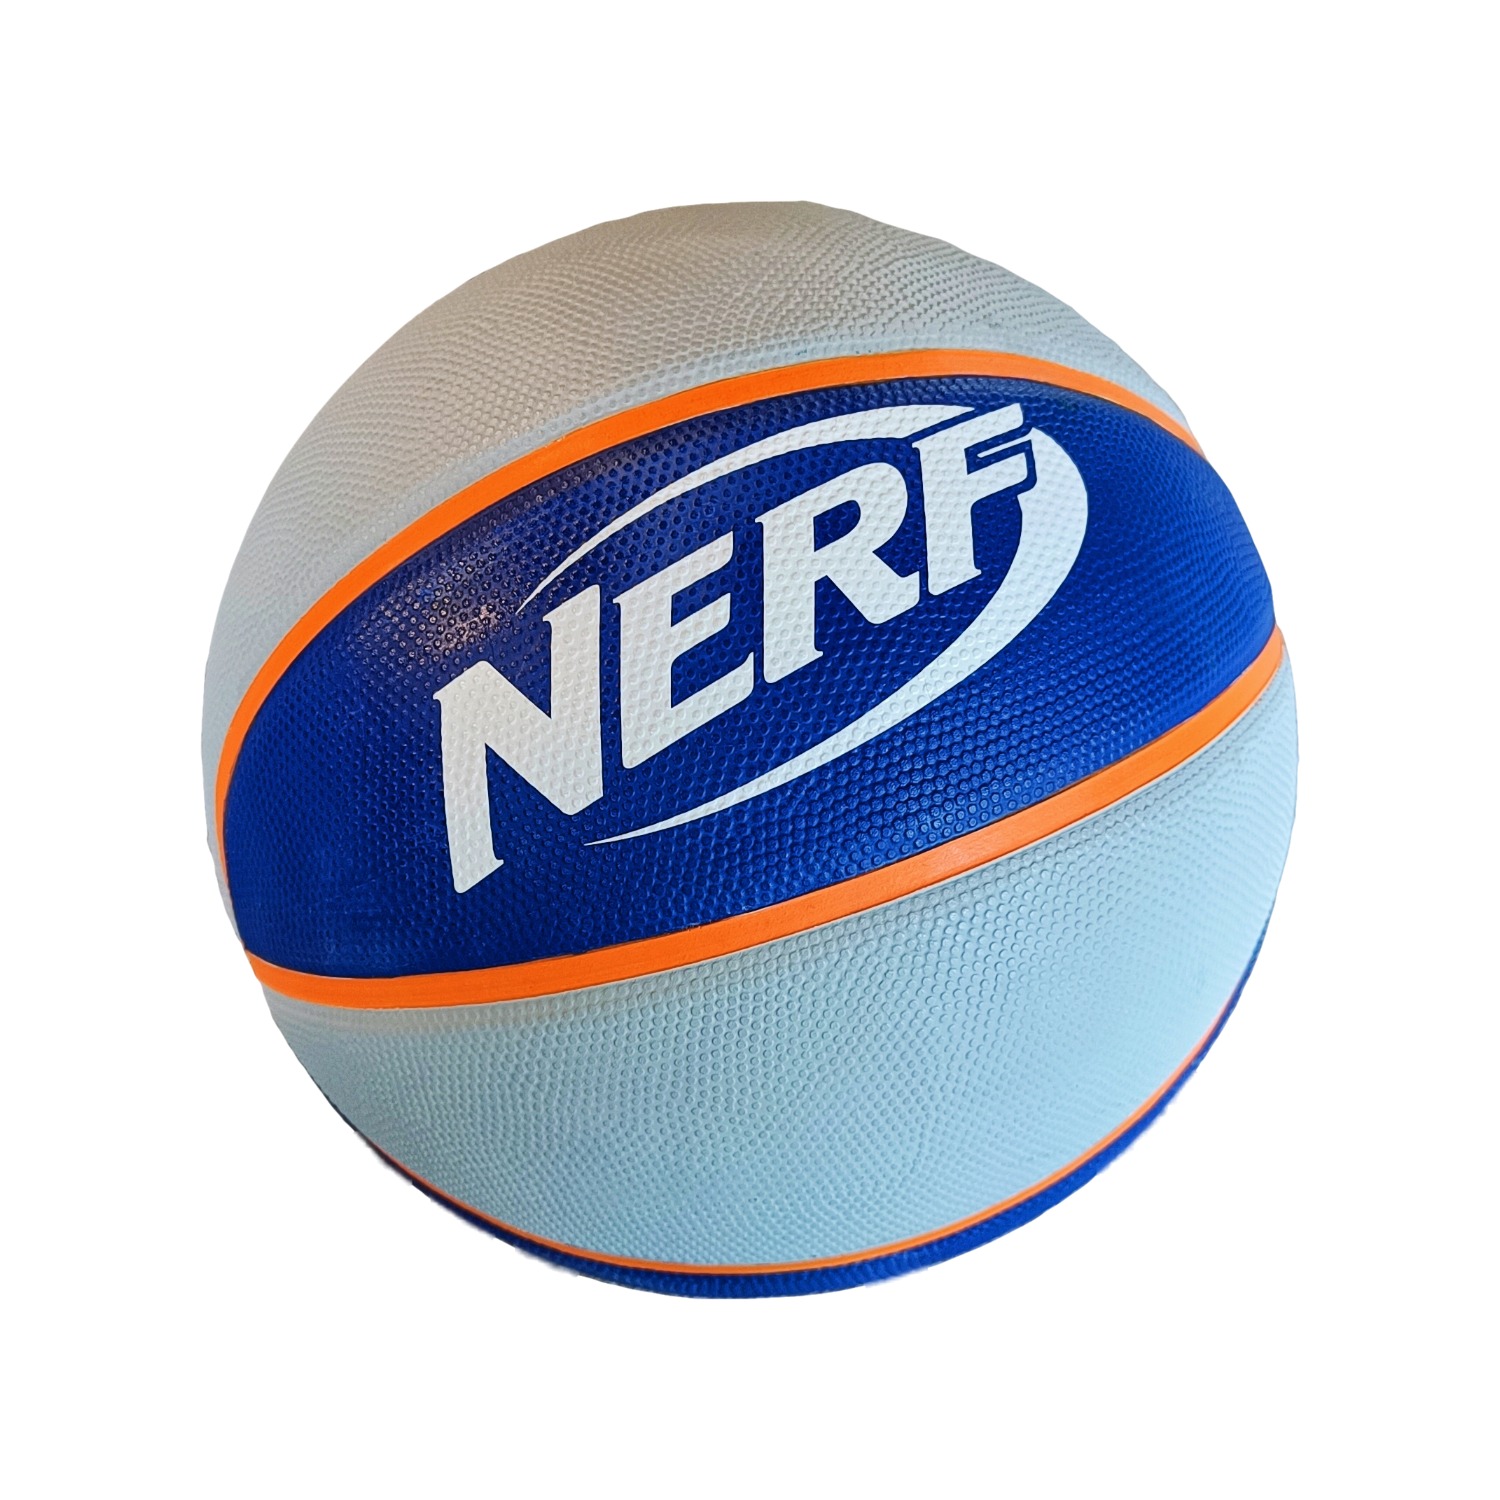 NERF Basketbal - 5 - nerf-pijltjes.nl